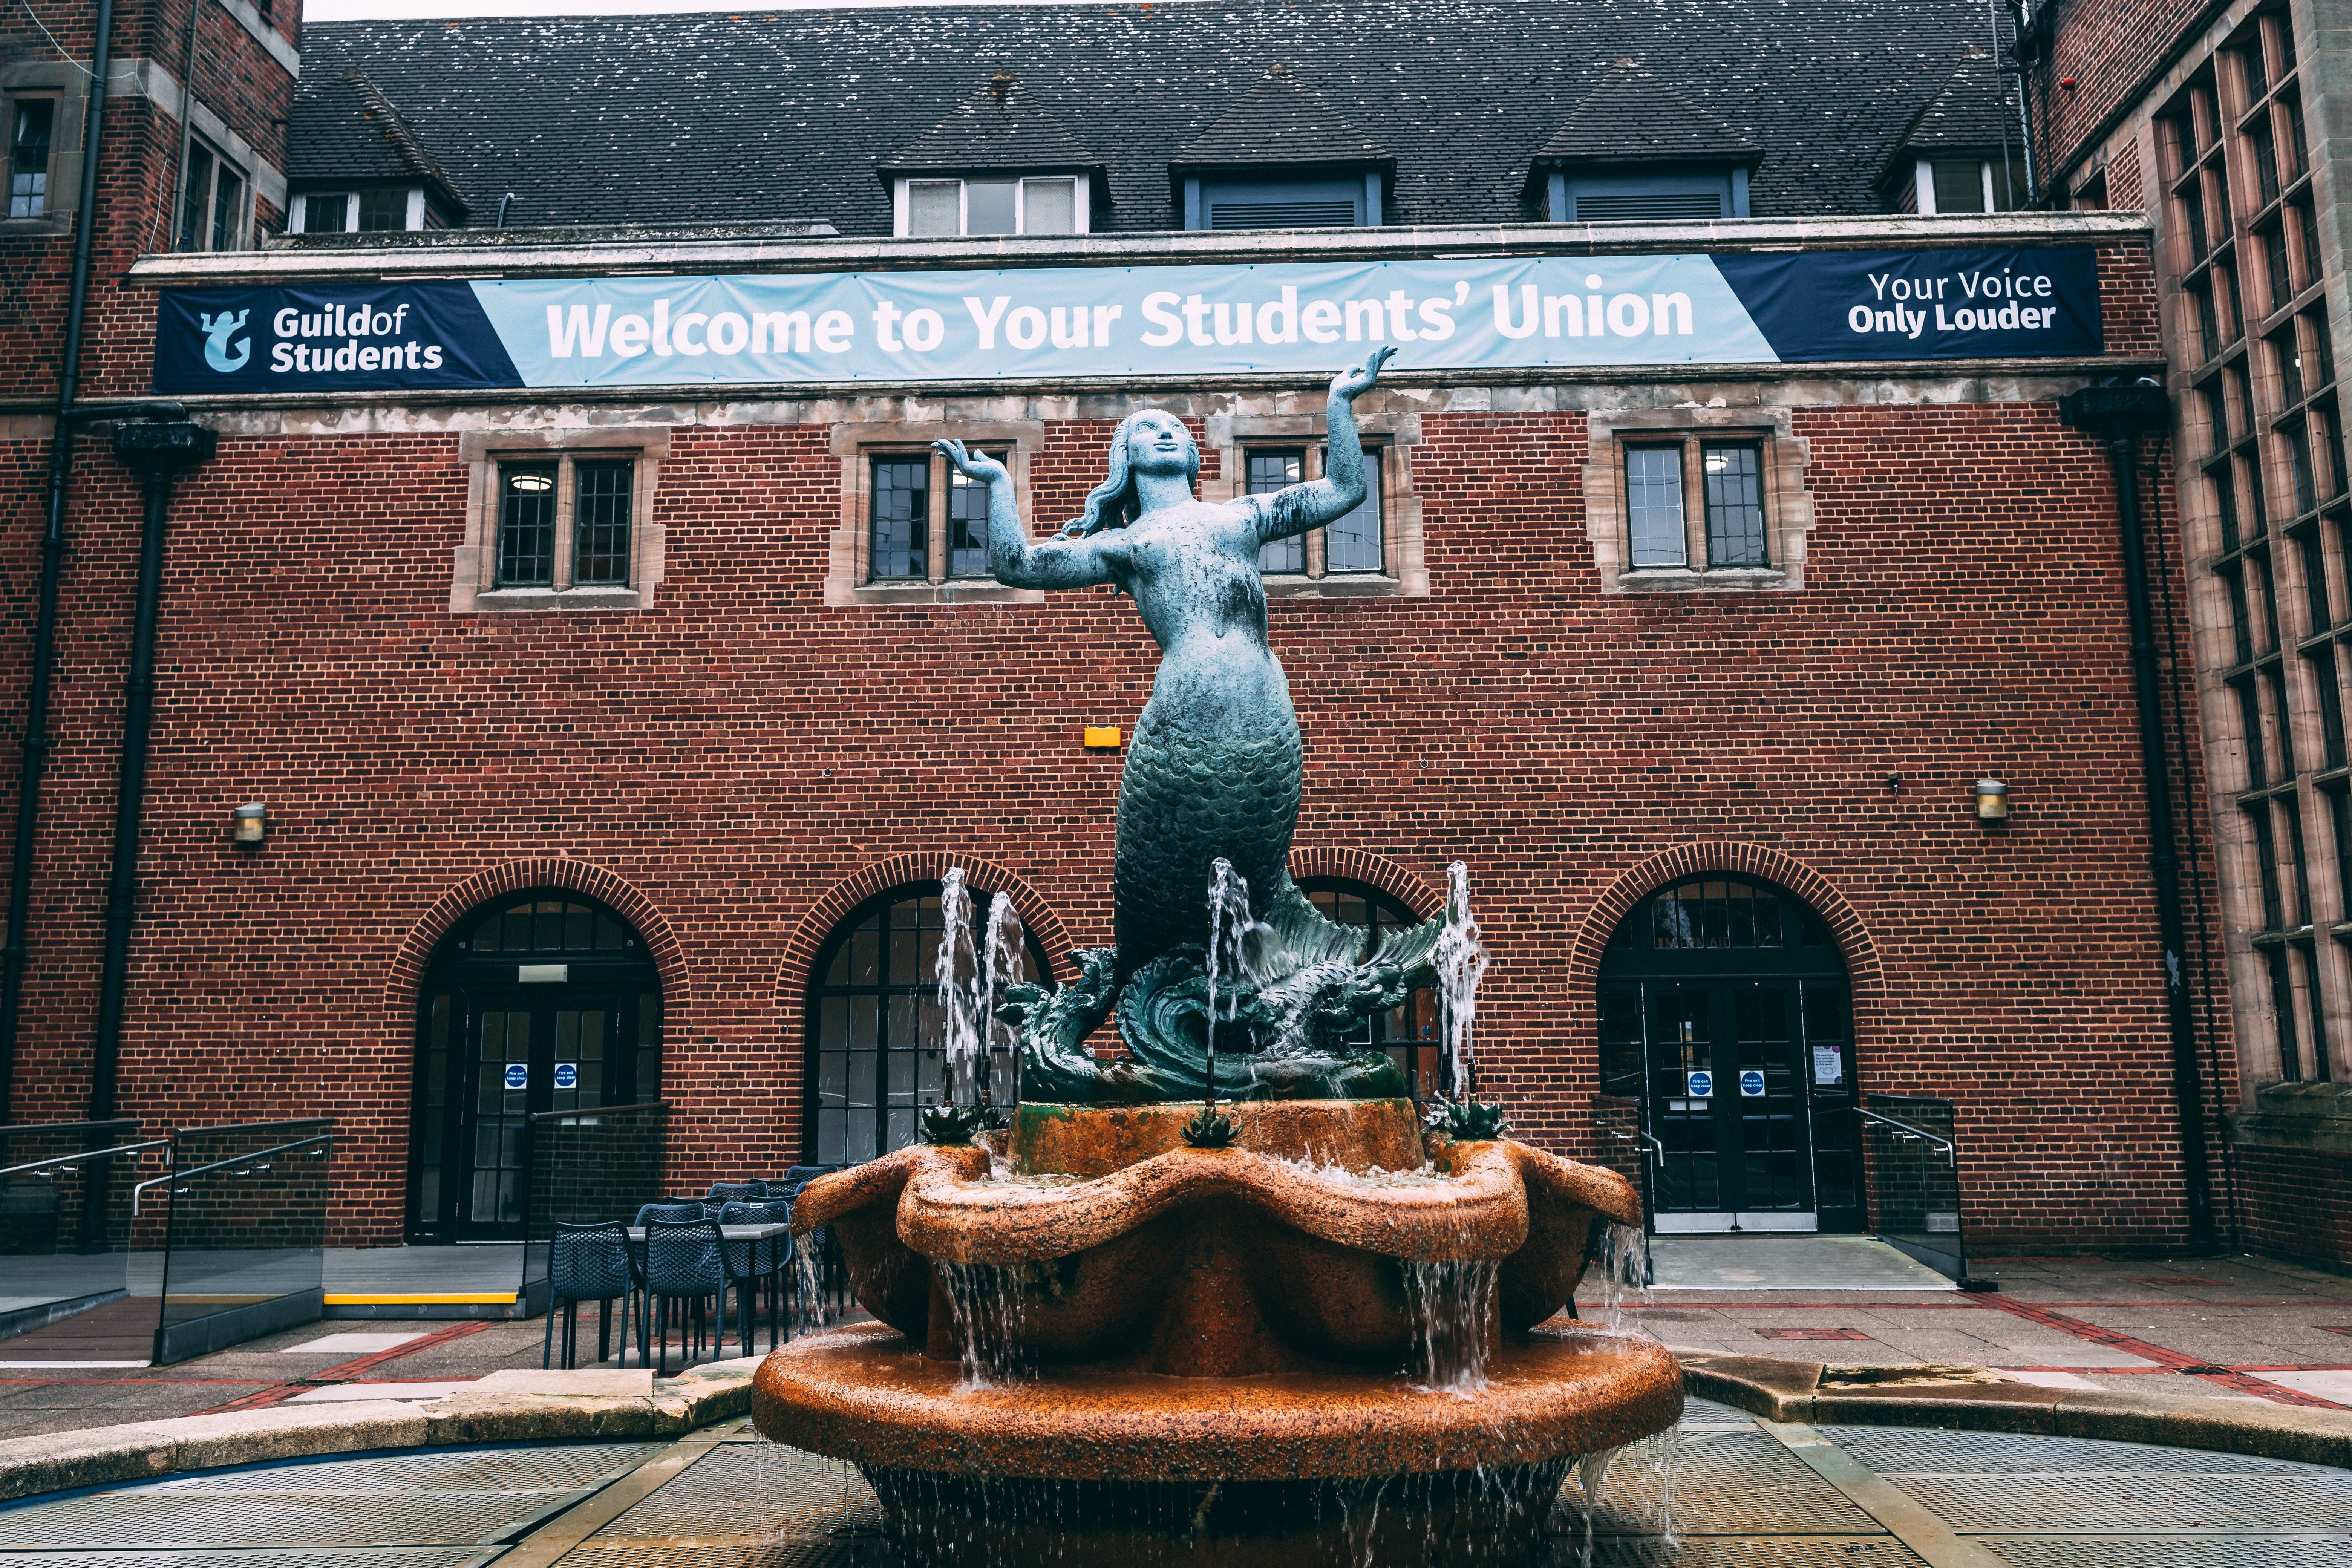 The University of Birmingham: A Prestigious Institution